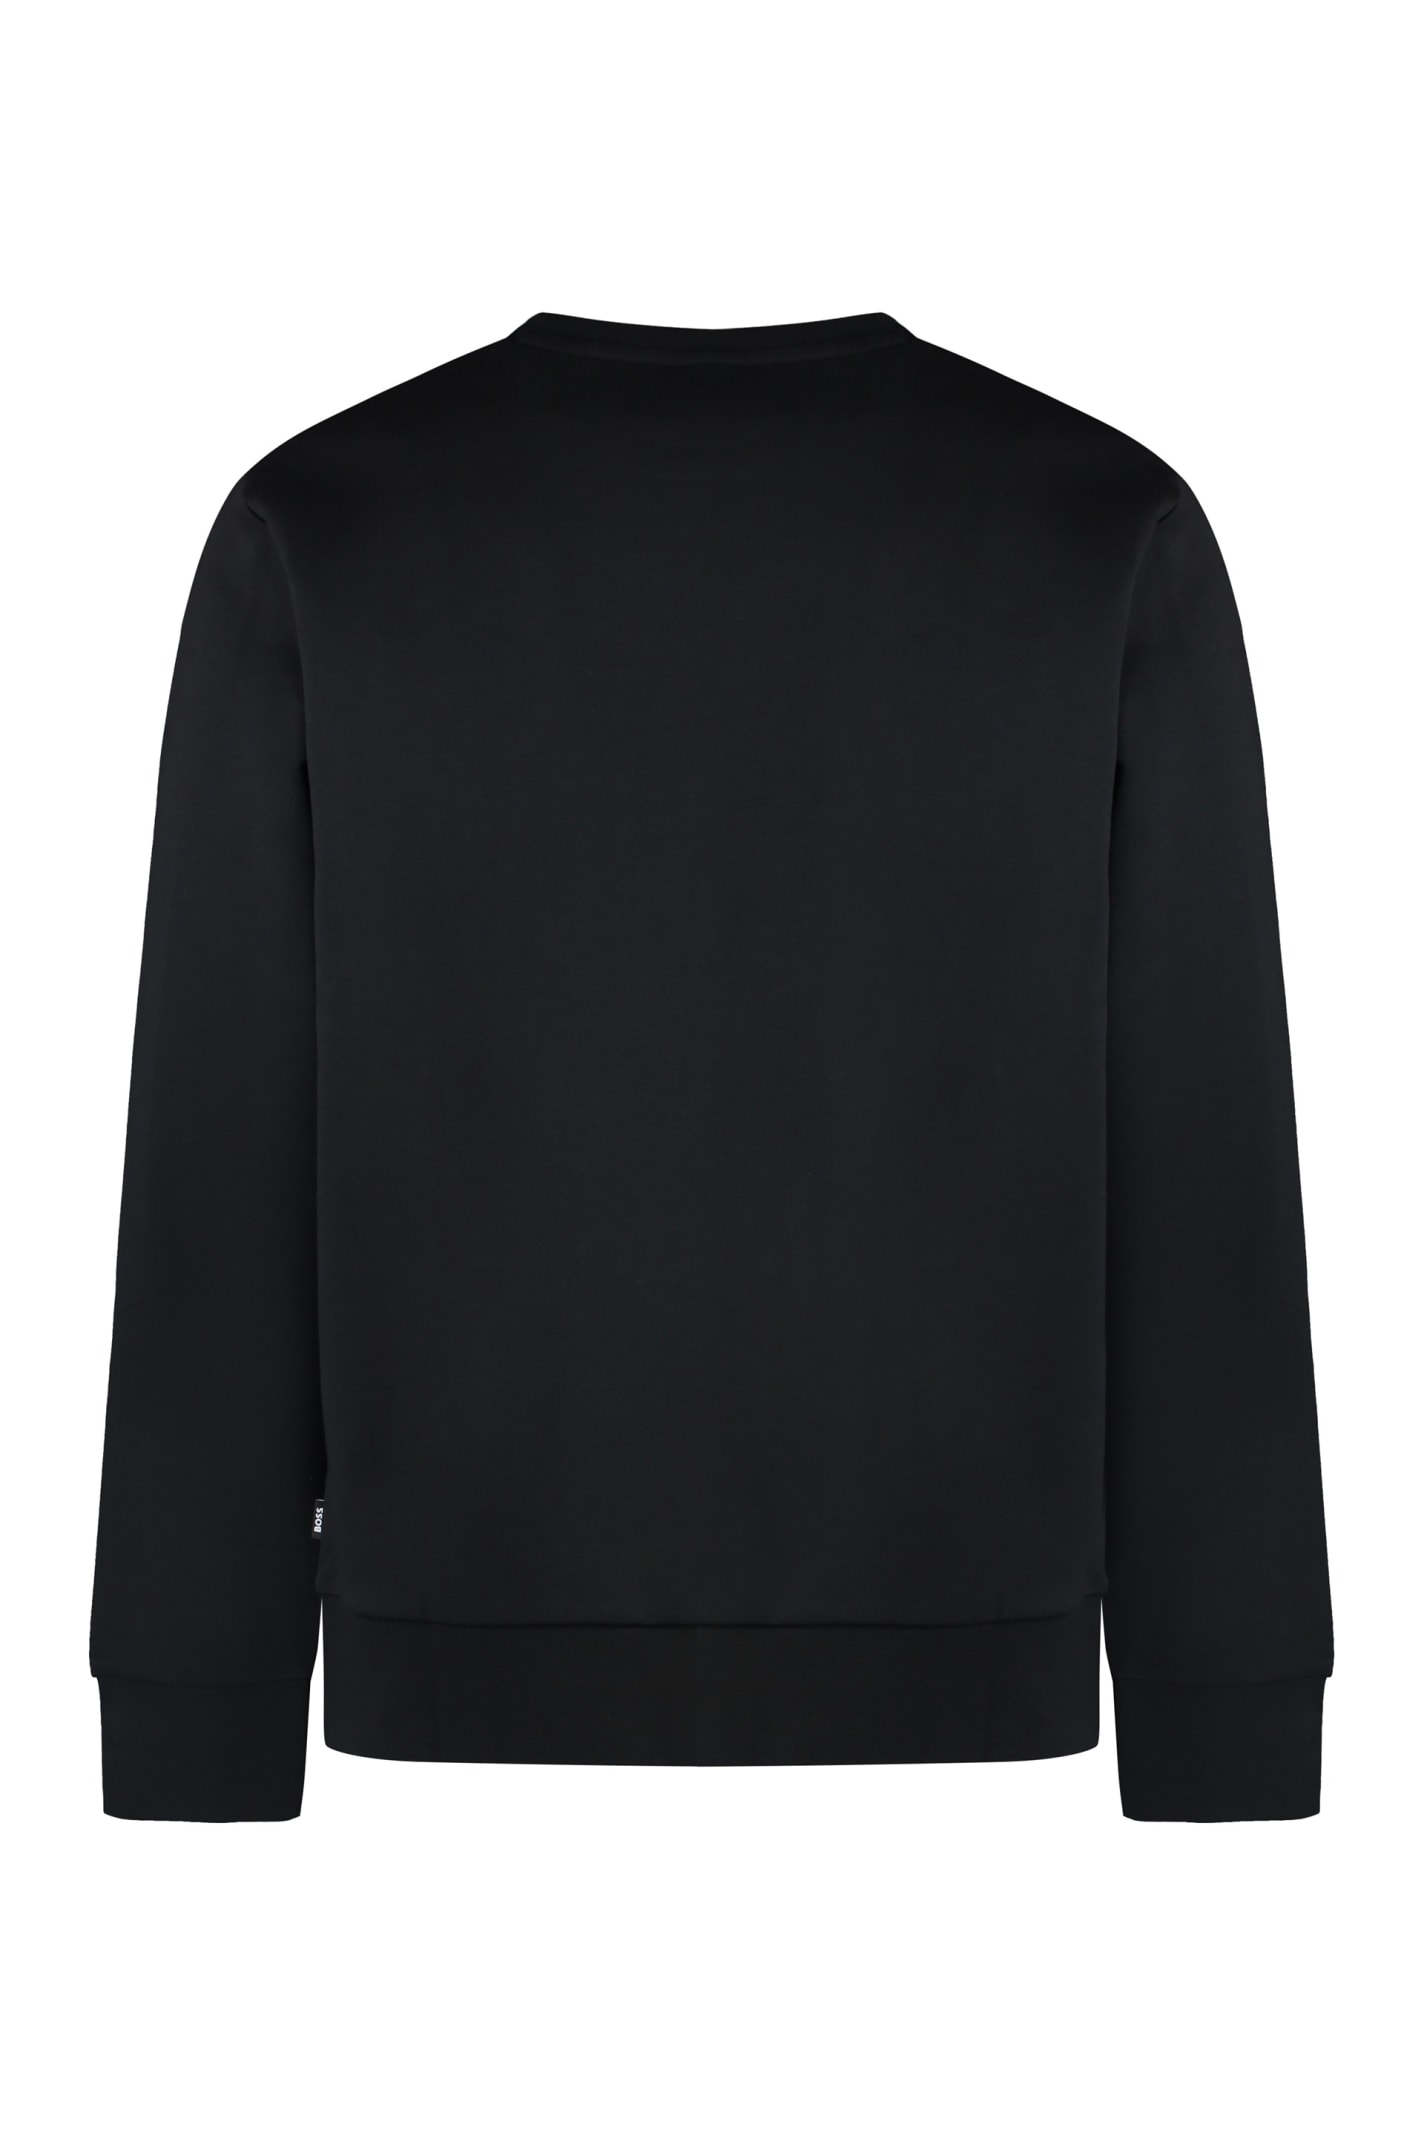 Shop Hugo Boss Cotton Crew-neck Sweatshirt In Black